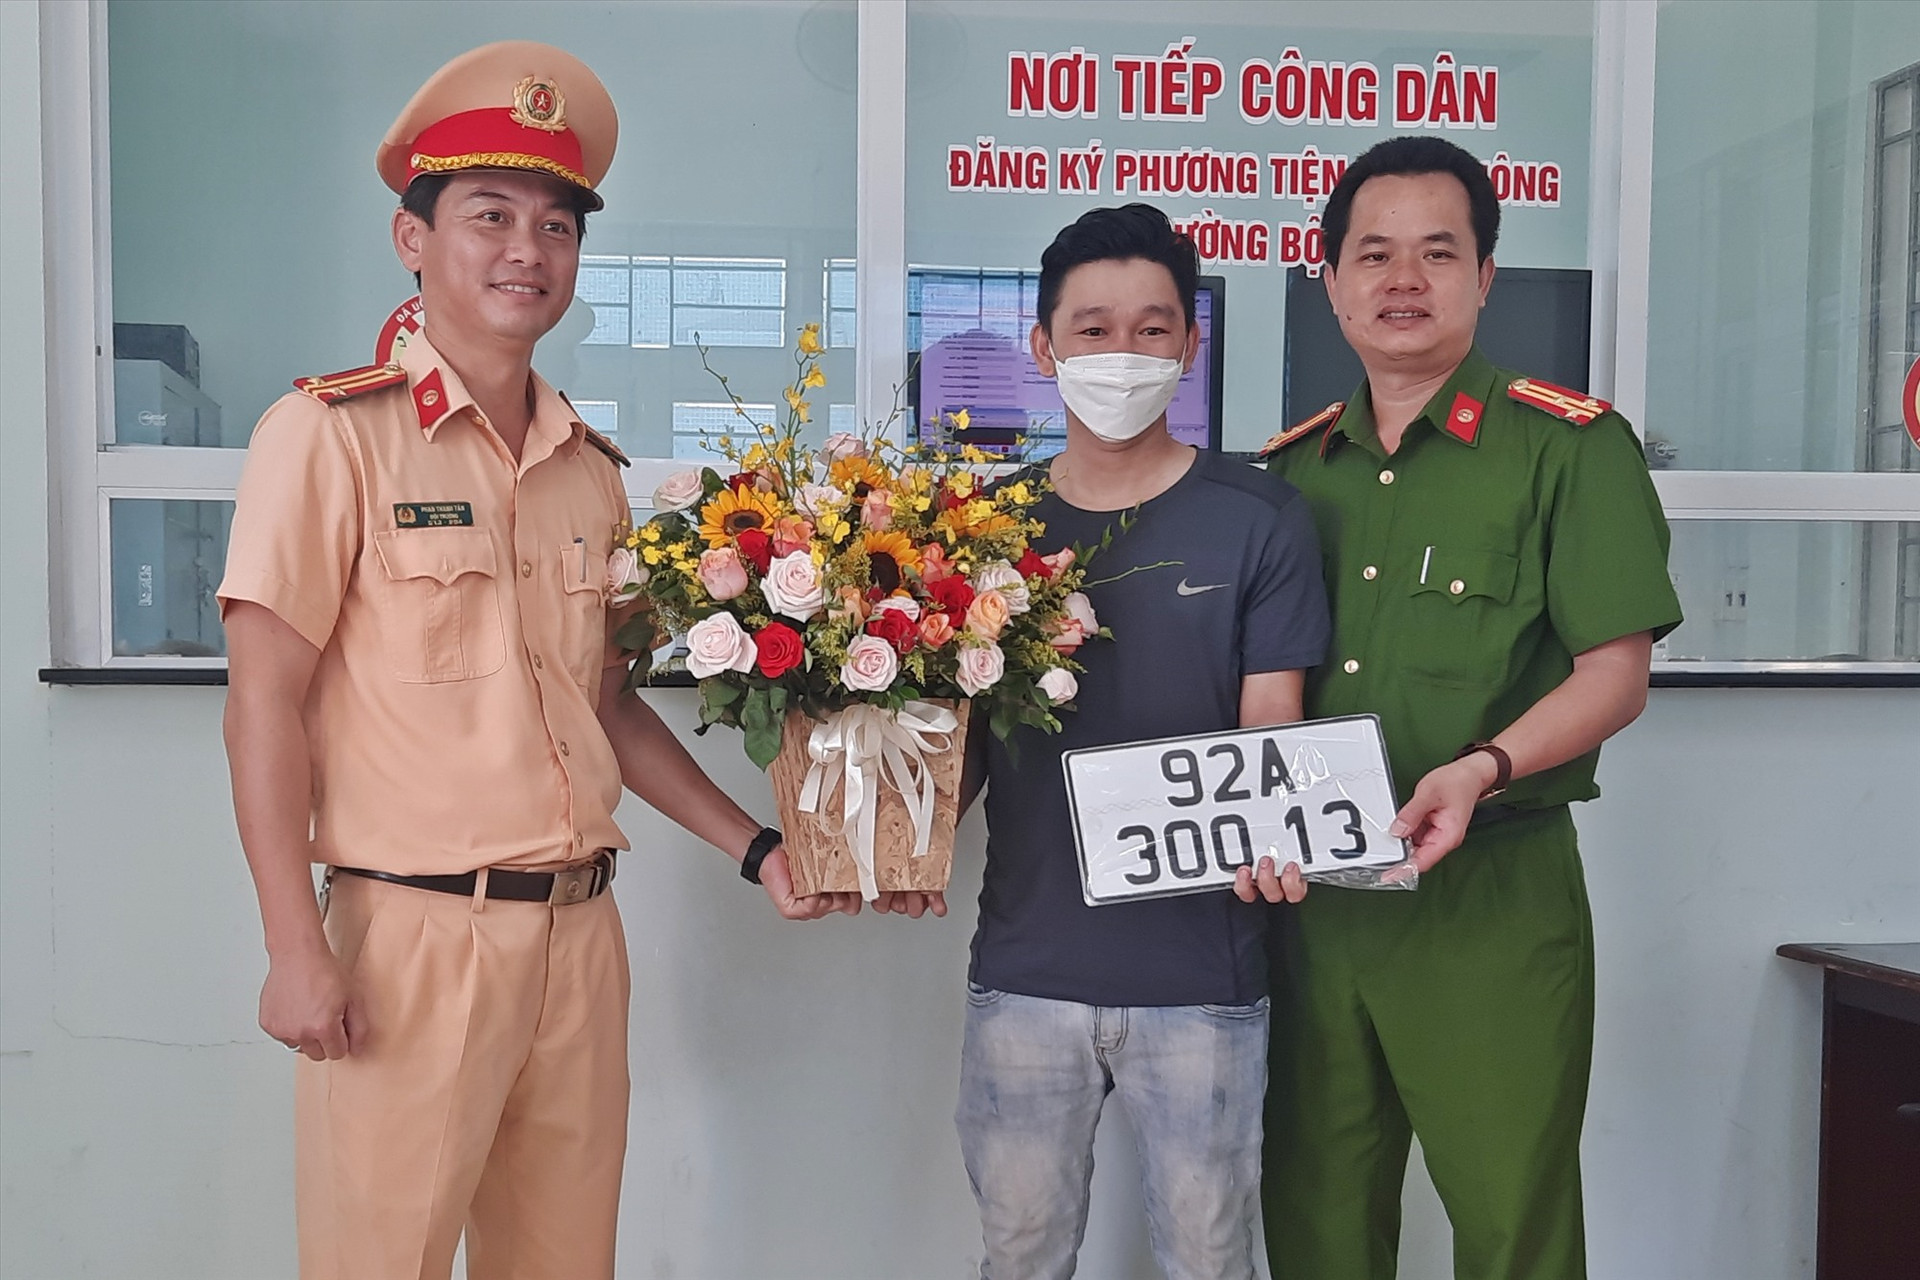 Công an huyện Núi Thành tặng hoa chúc mừng ông Nguyễn Ngọc Quảng - người đầu tiên thực hiện đăng ký mới xe ô tô theo Thông tư 15 ở địa phương này. Ảnh: Đ.C